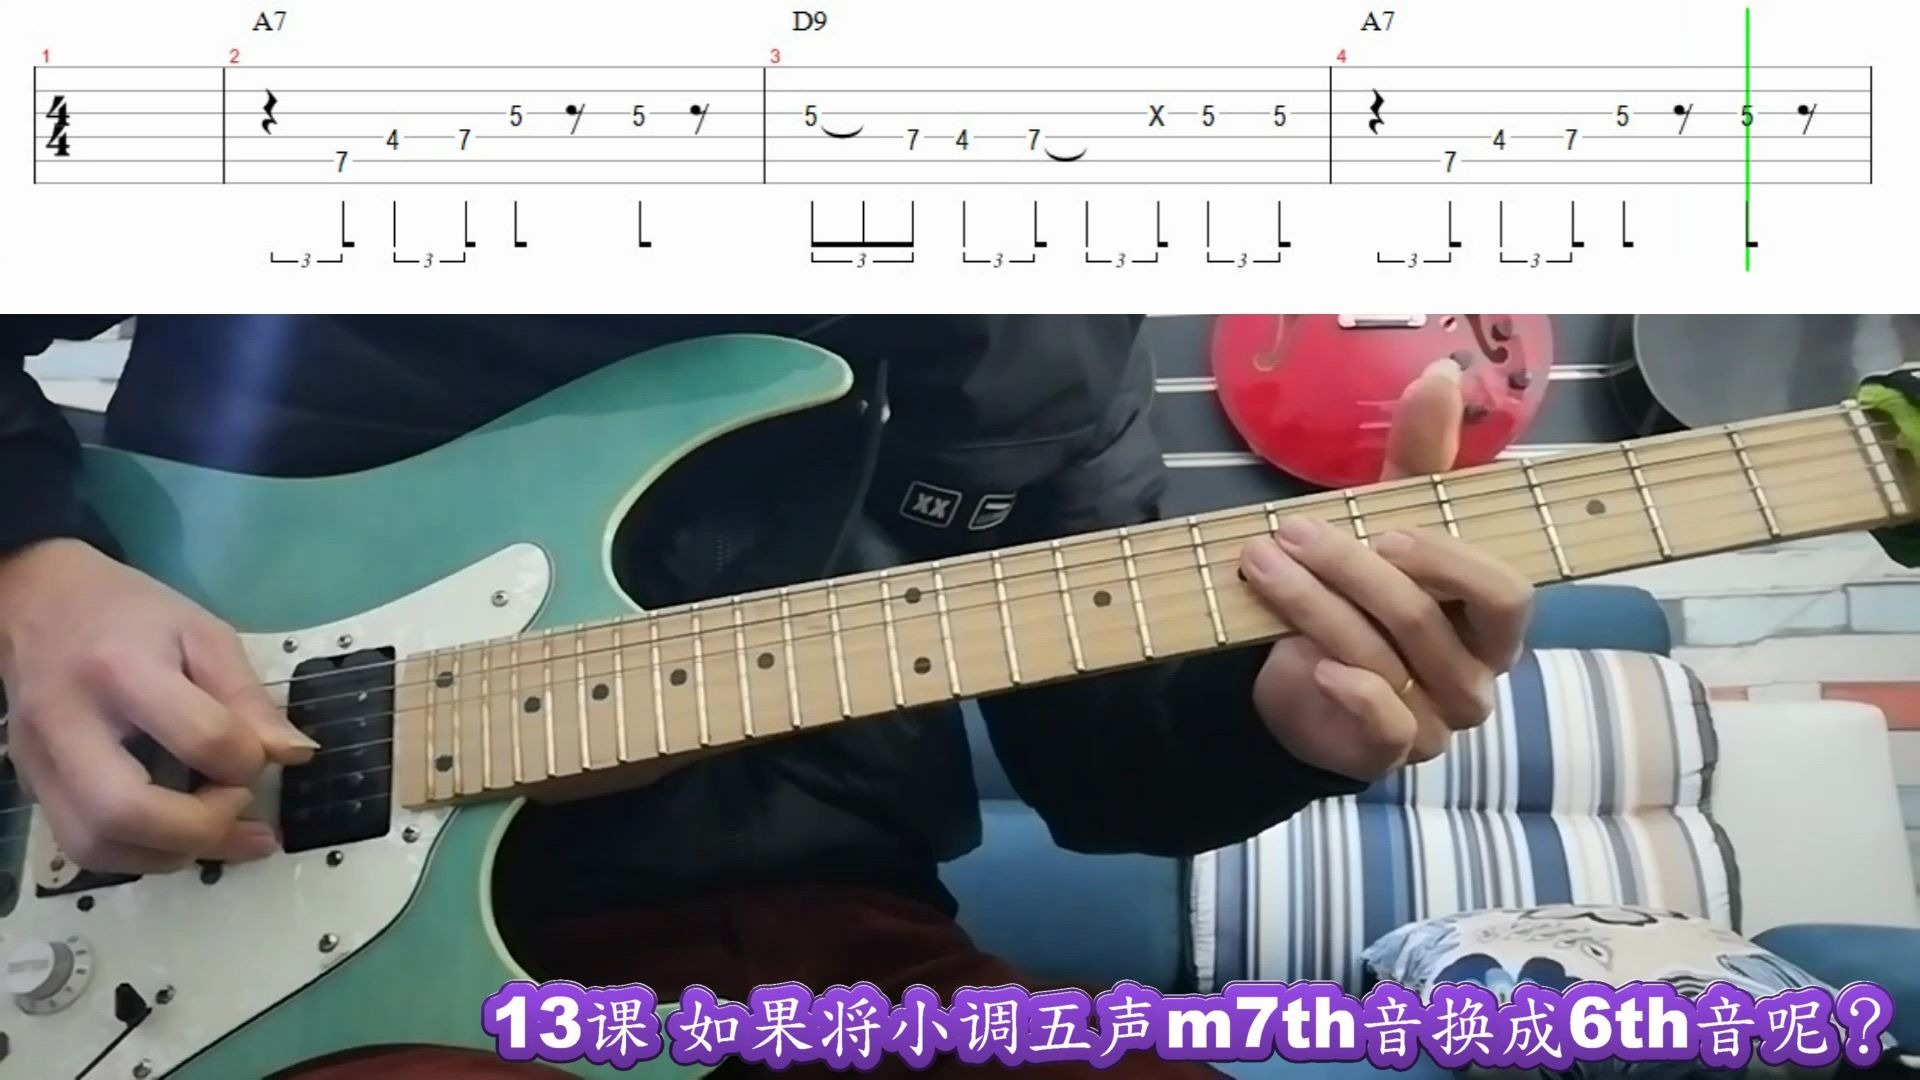 电吉他365日练习《小调五声音阶的基本把位》第14周-电吉他曲谱 - 乐器学习网